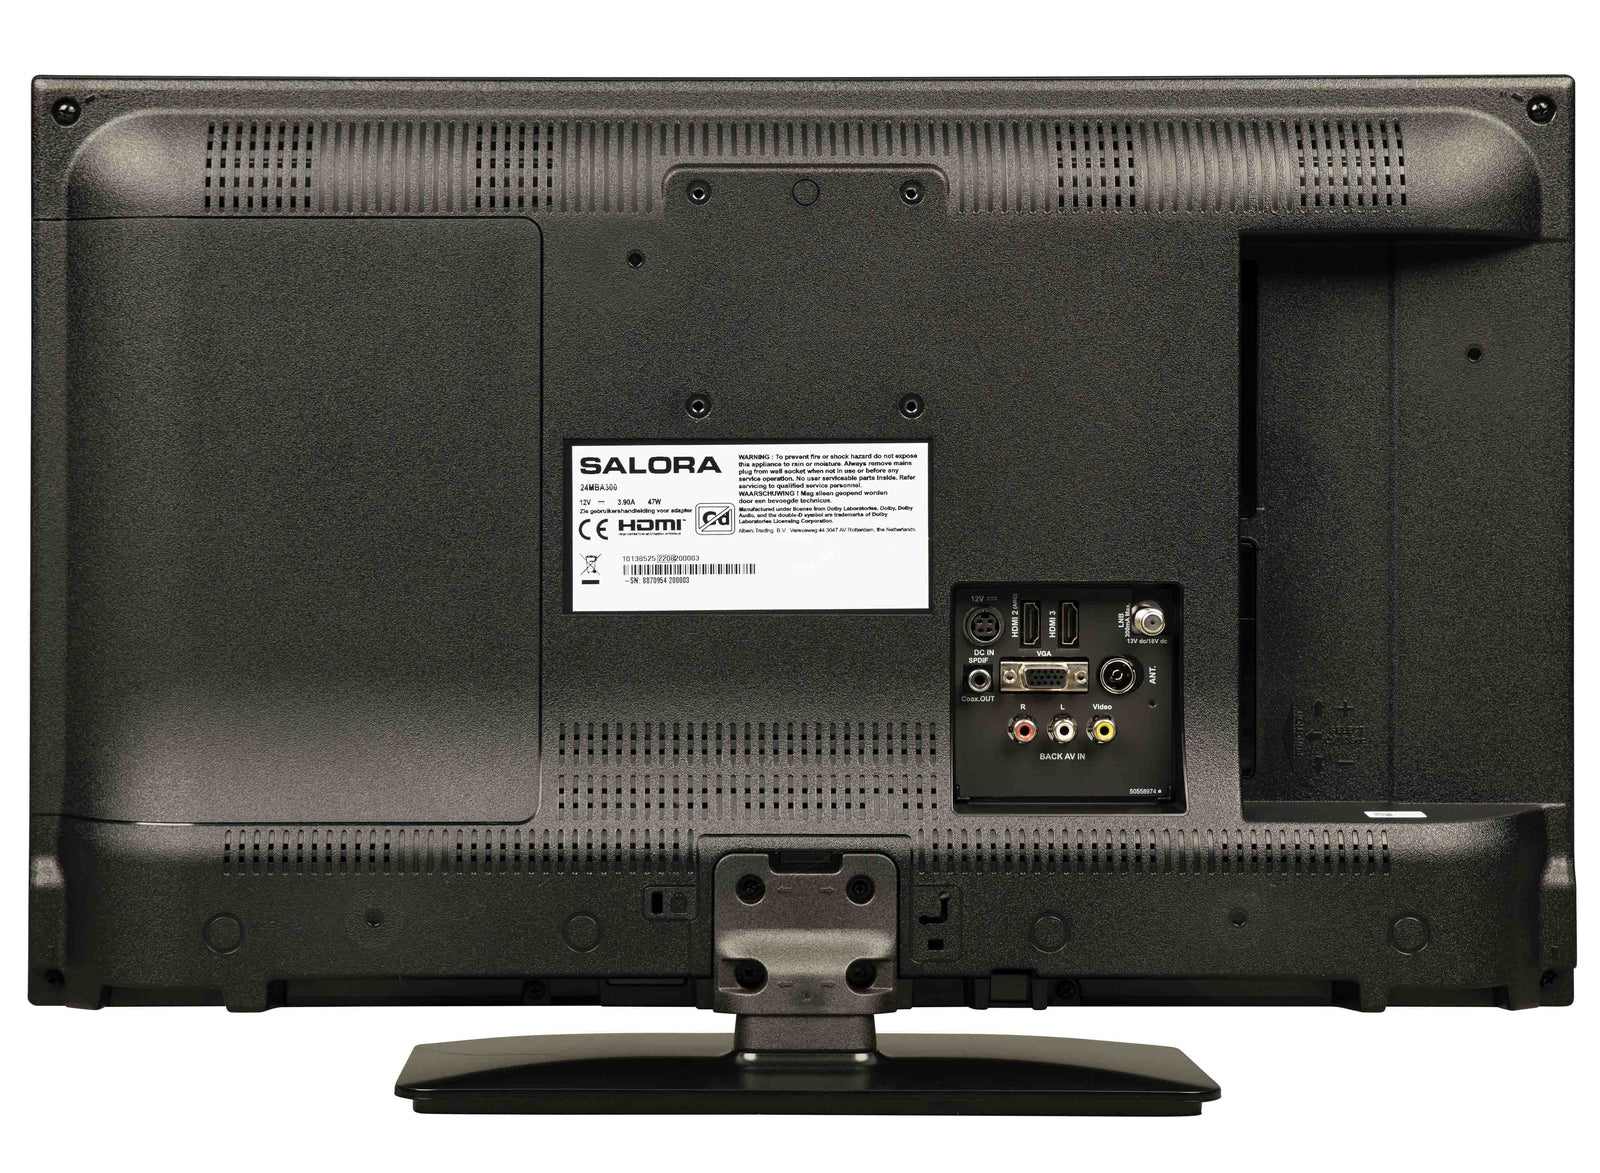 Salora 24MBA300 Smart TV met 12/220 volt aansluiting